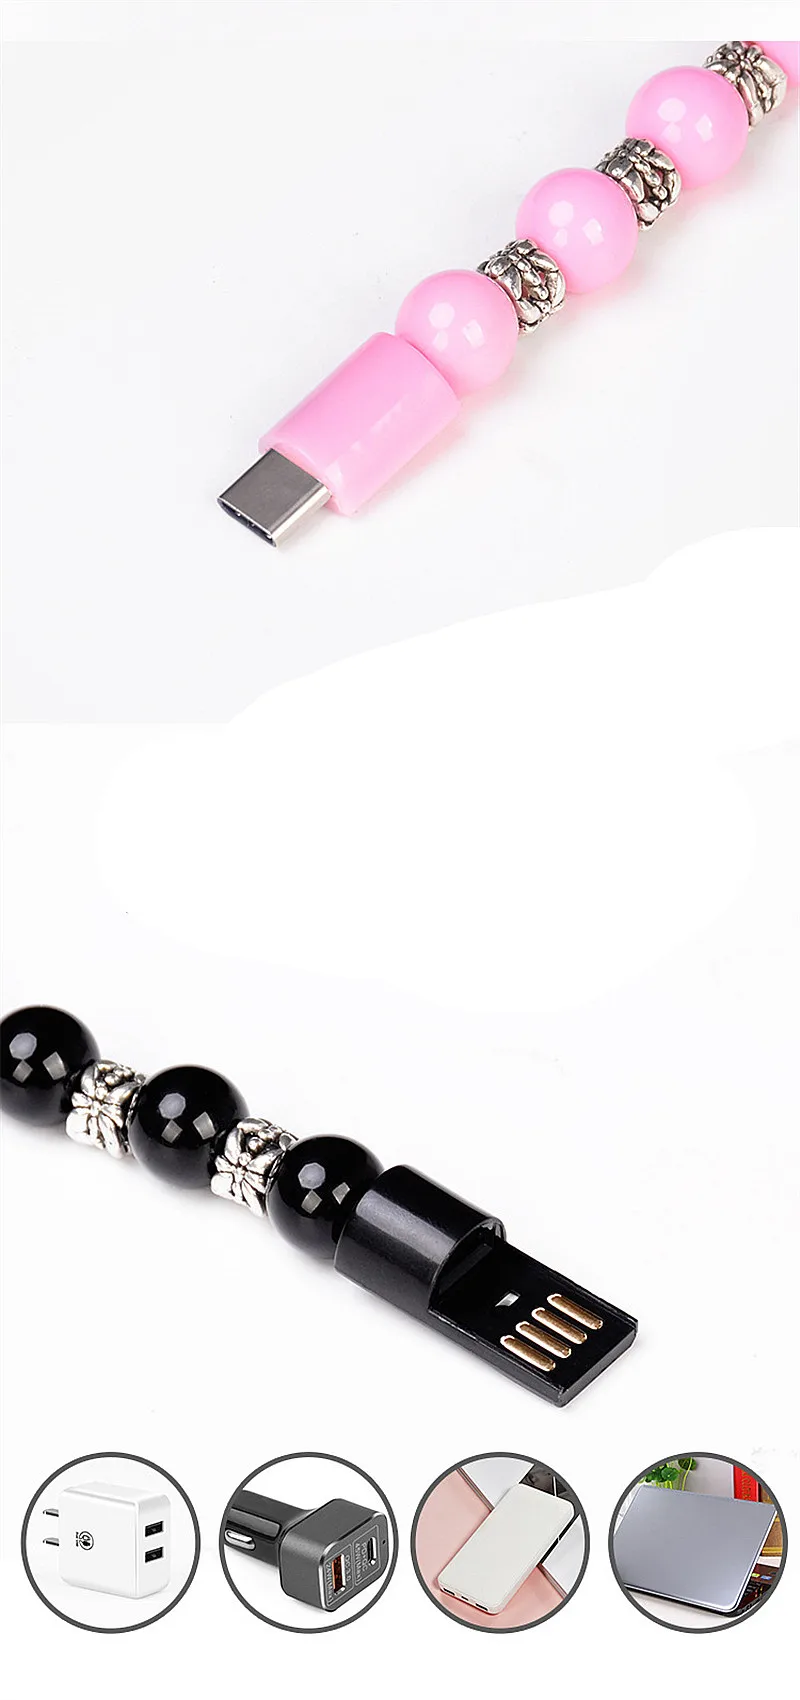 8 pin Micro USB2.0 Crea tive USB кабель для передачи данных браслет из бисера зарядное устройство для iPhone samsung Xiaomi mi8 Android type C автомобильное зарядное устройство для телефона